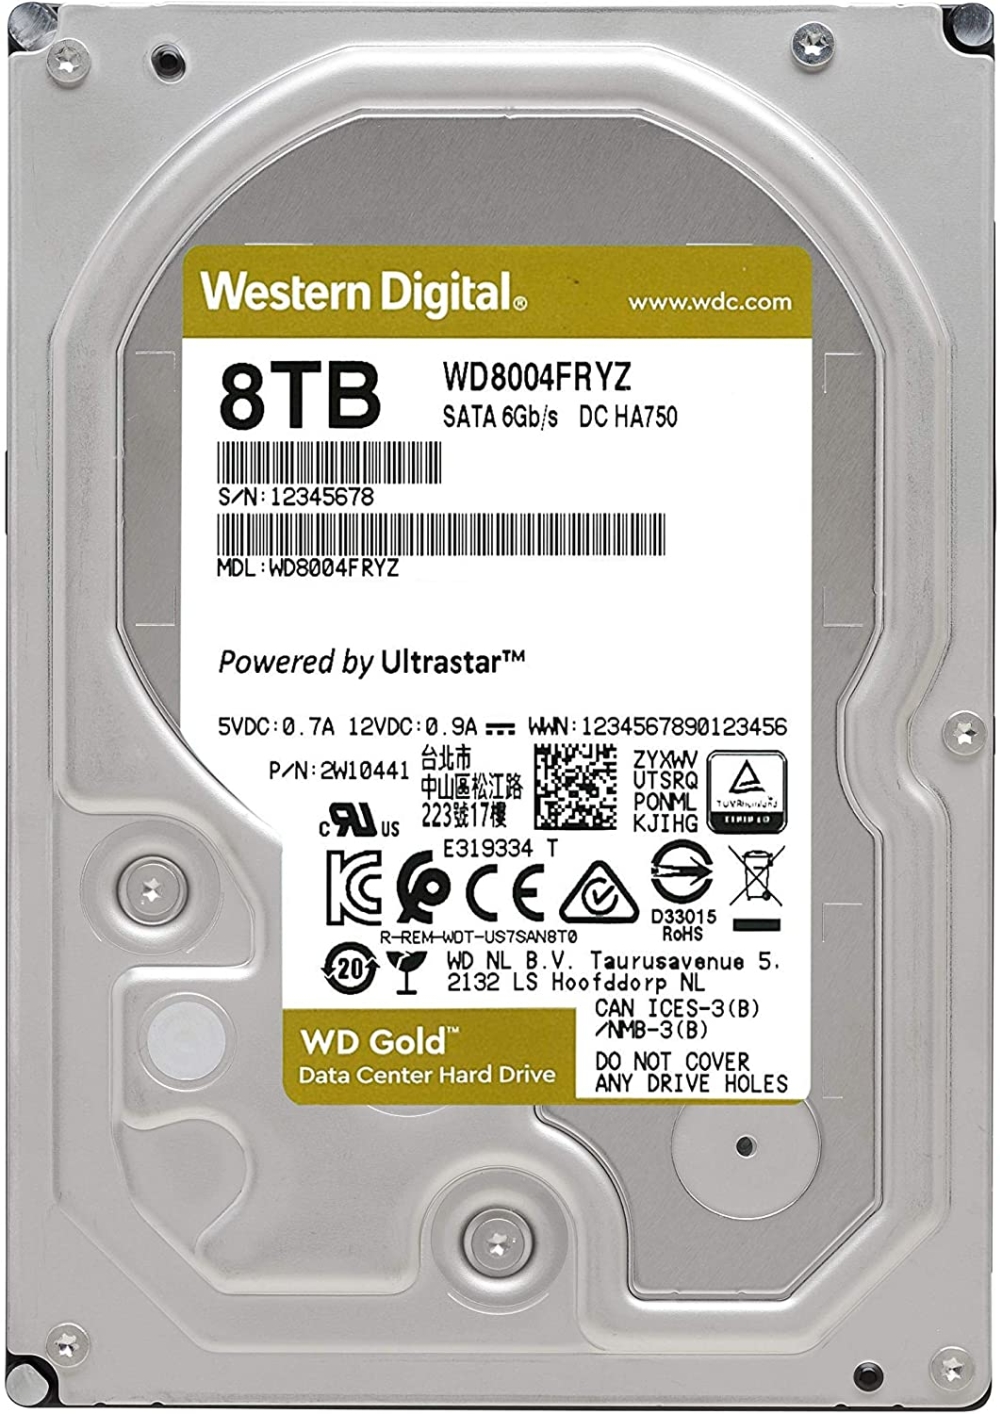 tvard-disk-western-digital-gold-datacenter-hdd-8-t-western-digital-wd8004fryz